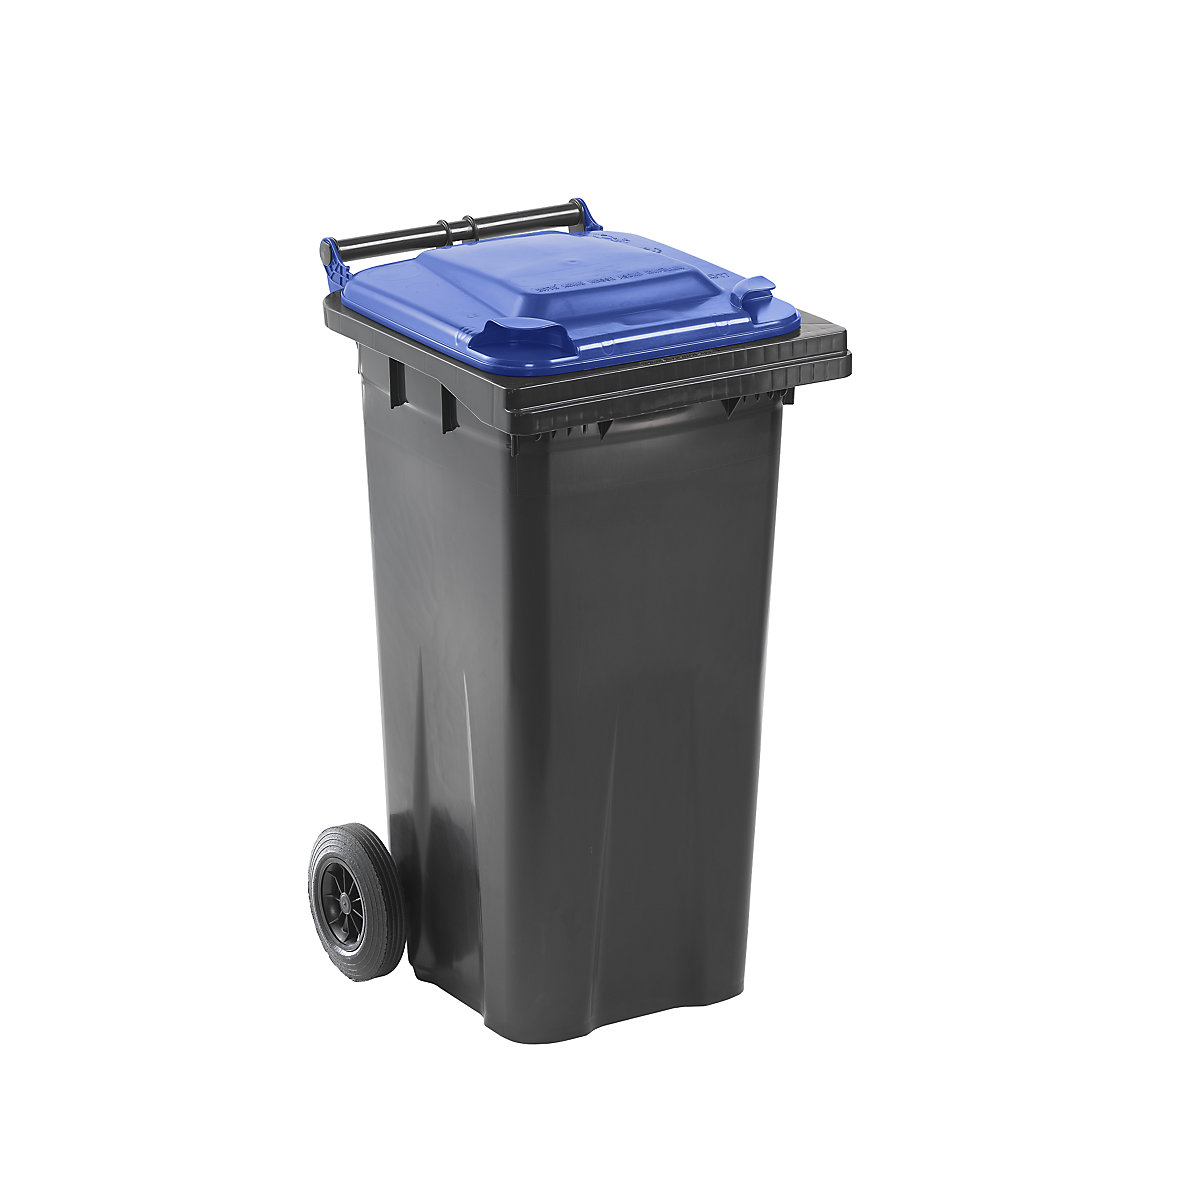 Nádoba na odpad podle ČSN EN 840, objem 120 l, š x v x h 505 x 1005 x 555 mm, antracitová, víko modré